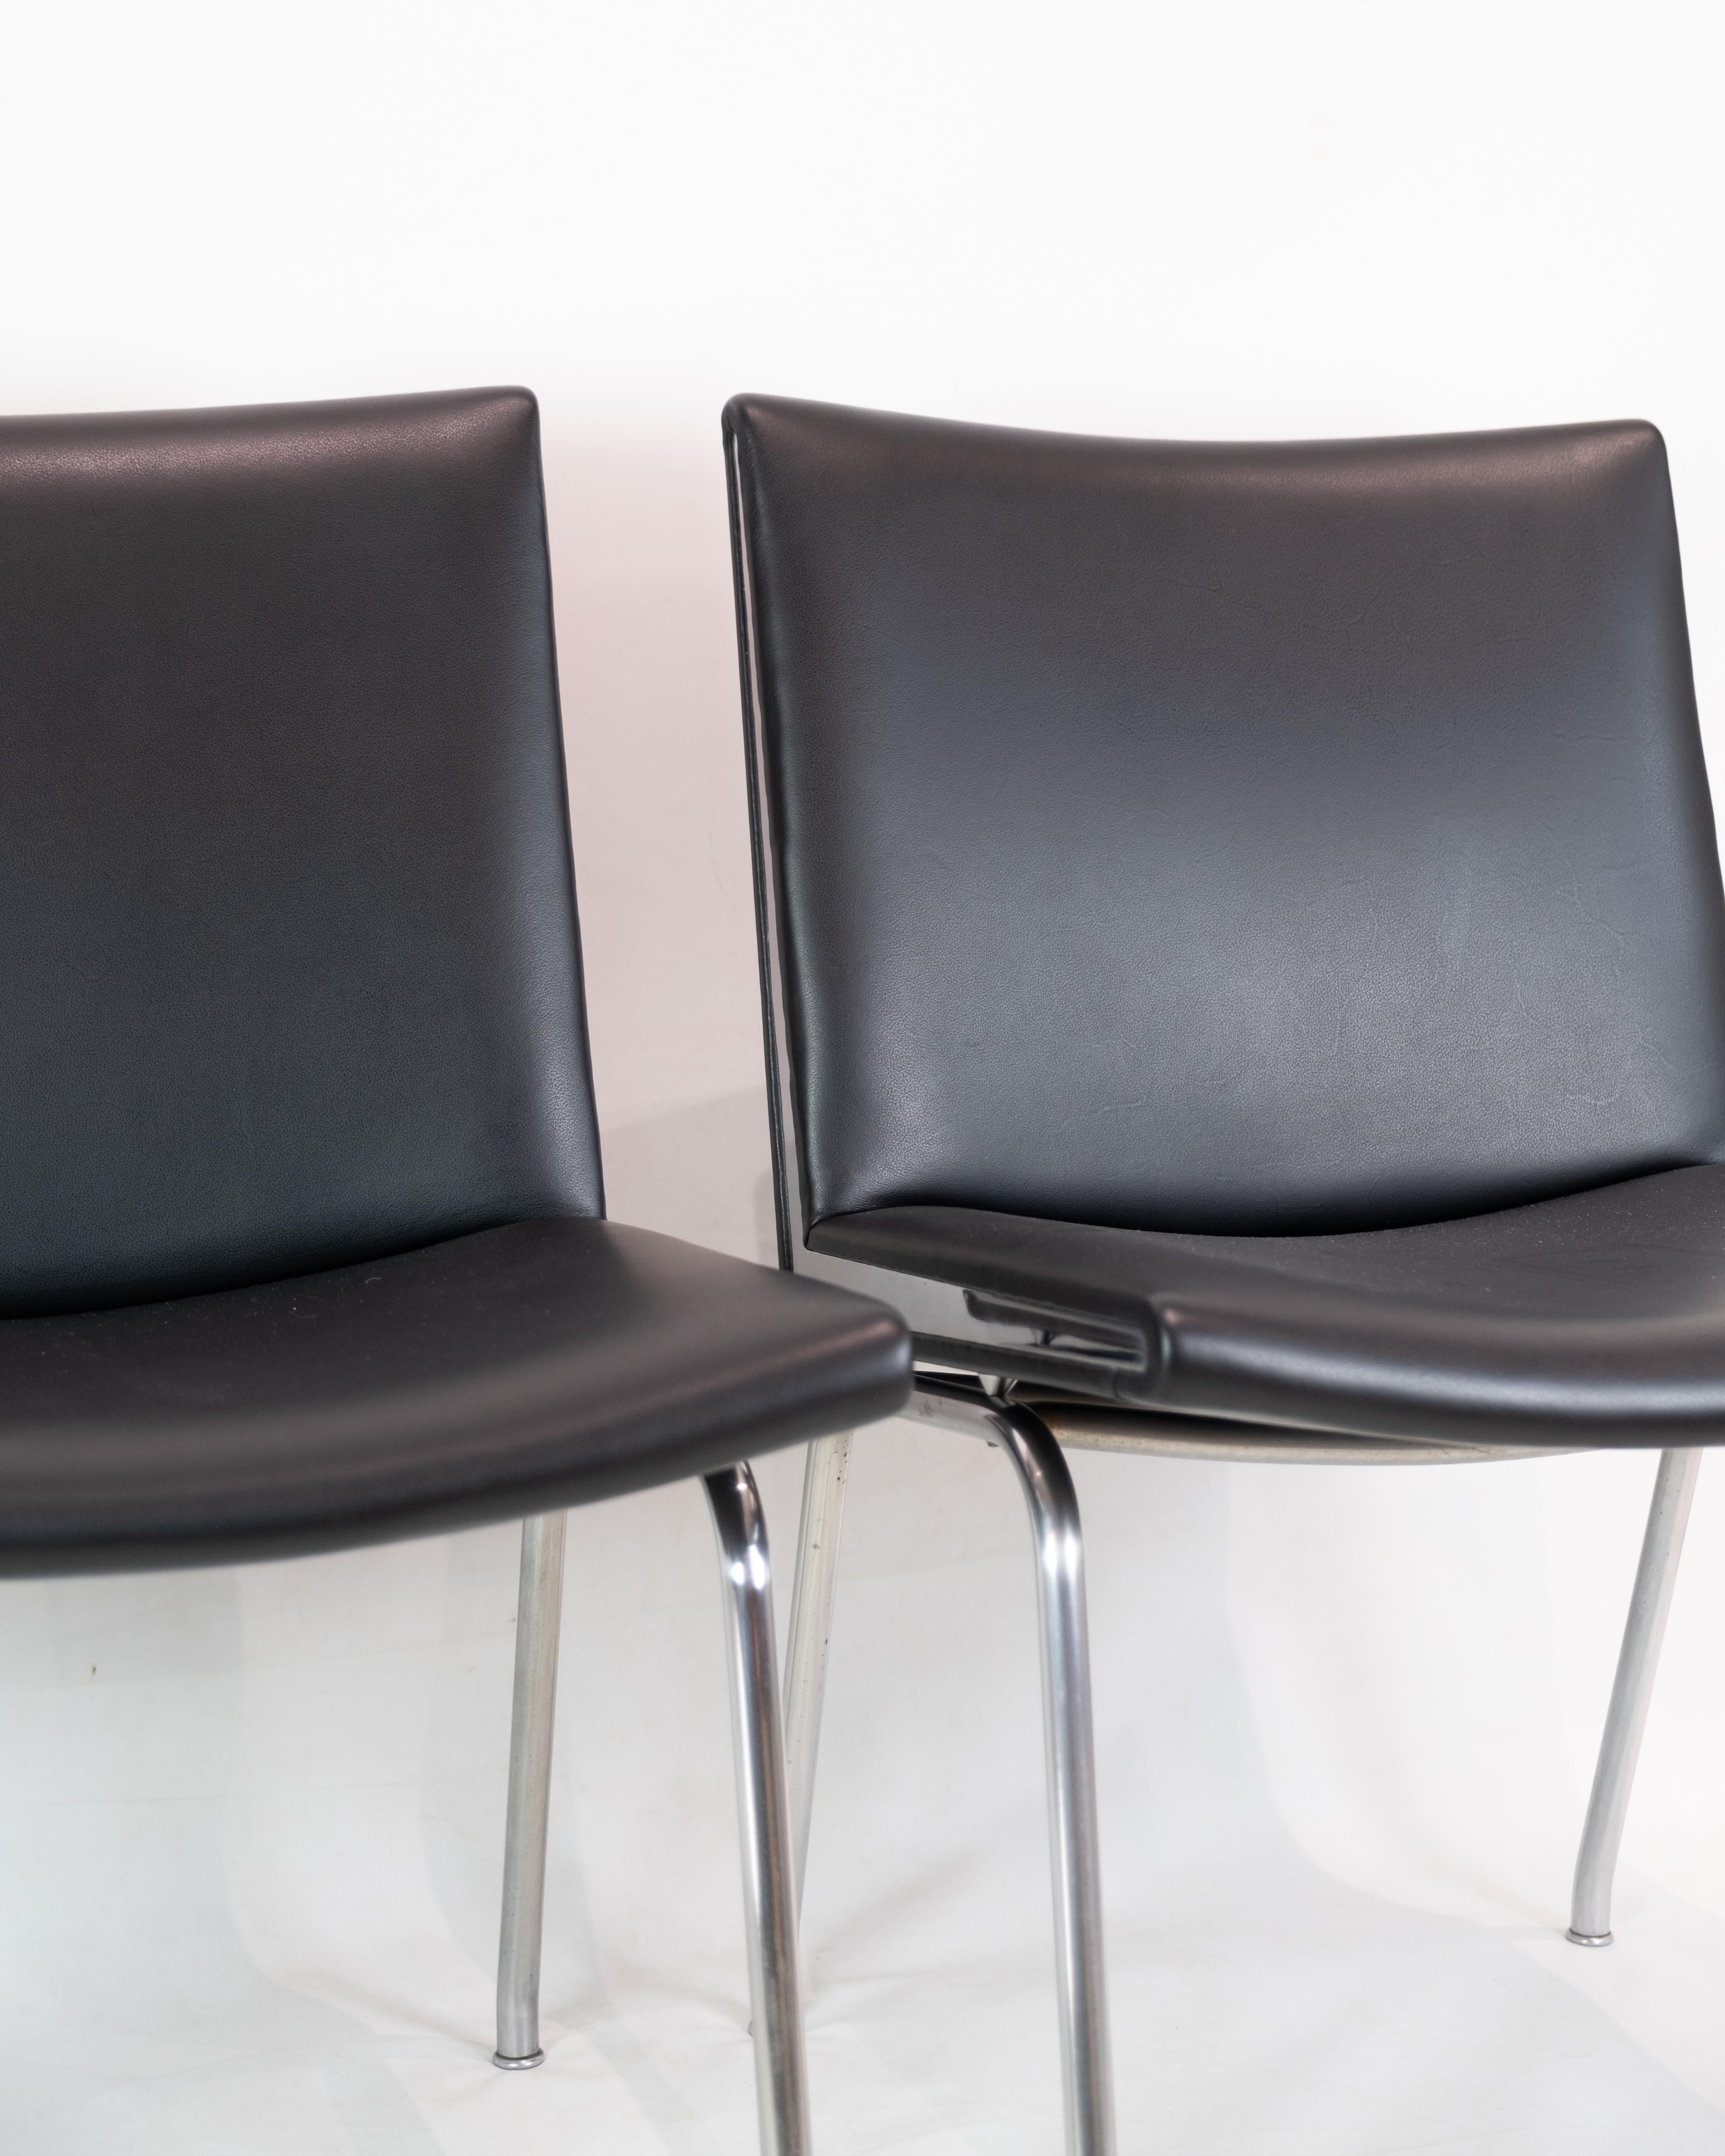 Kastrup Chair in Black Leather Model CH401 By Hans J. Wegner & Carl Hansen & Søn For Sale 1